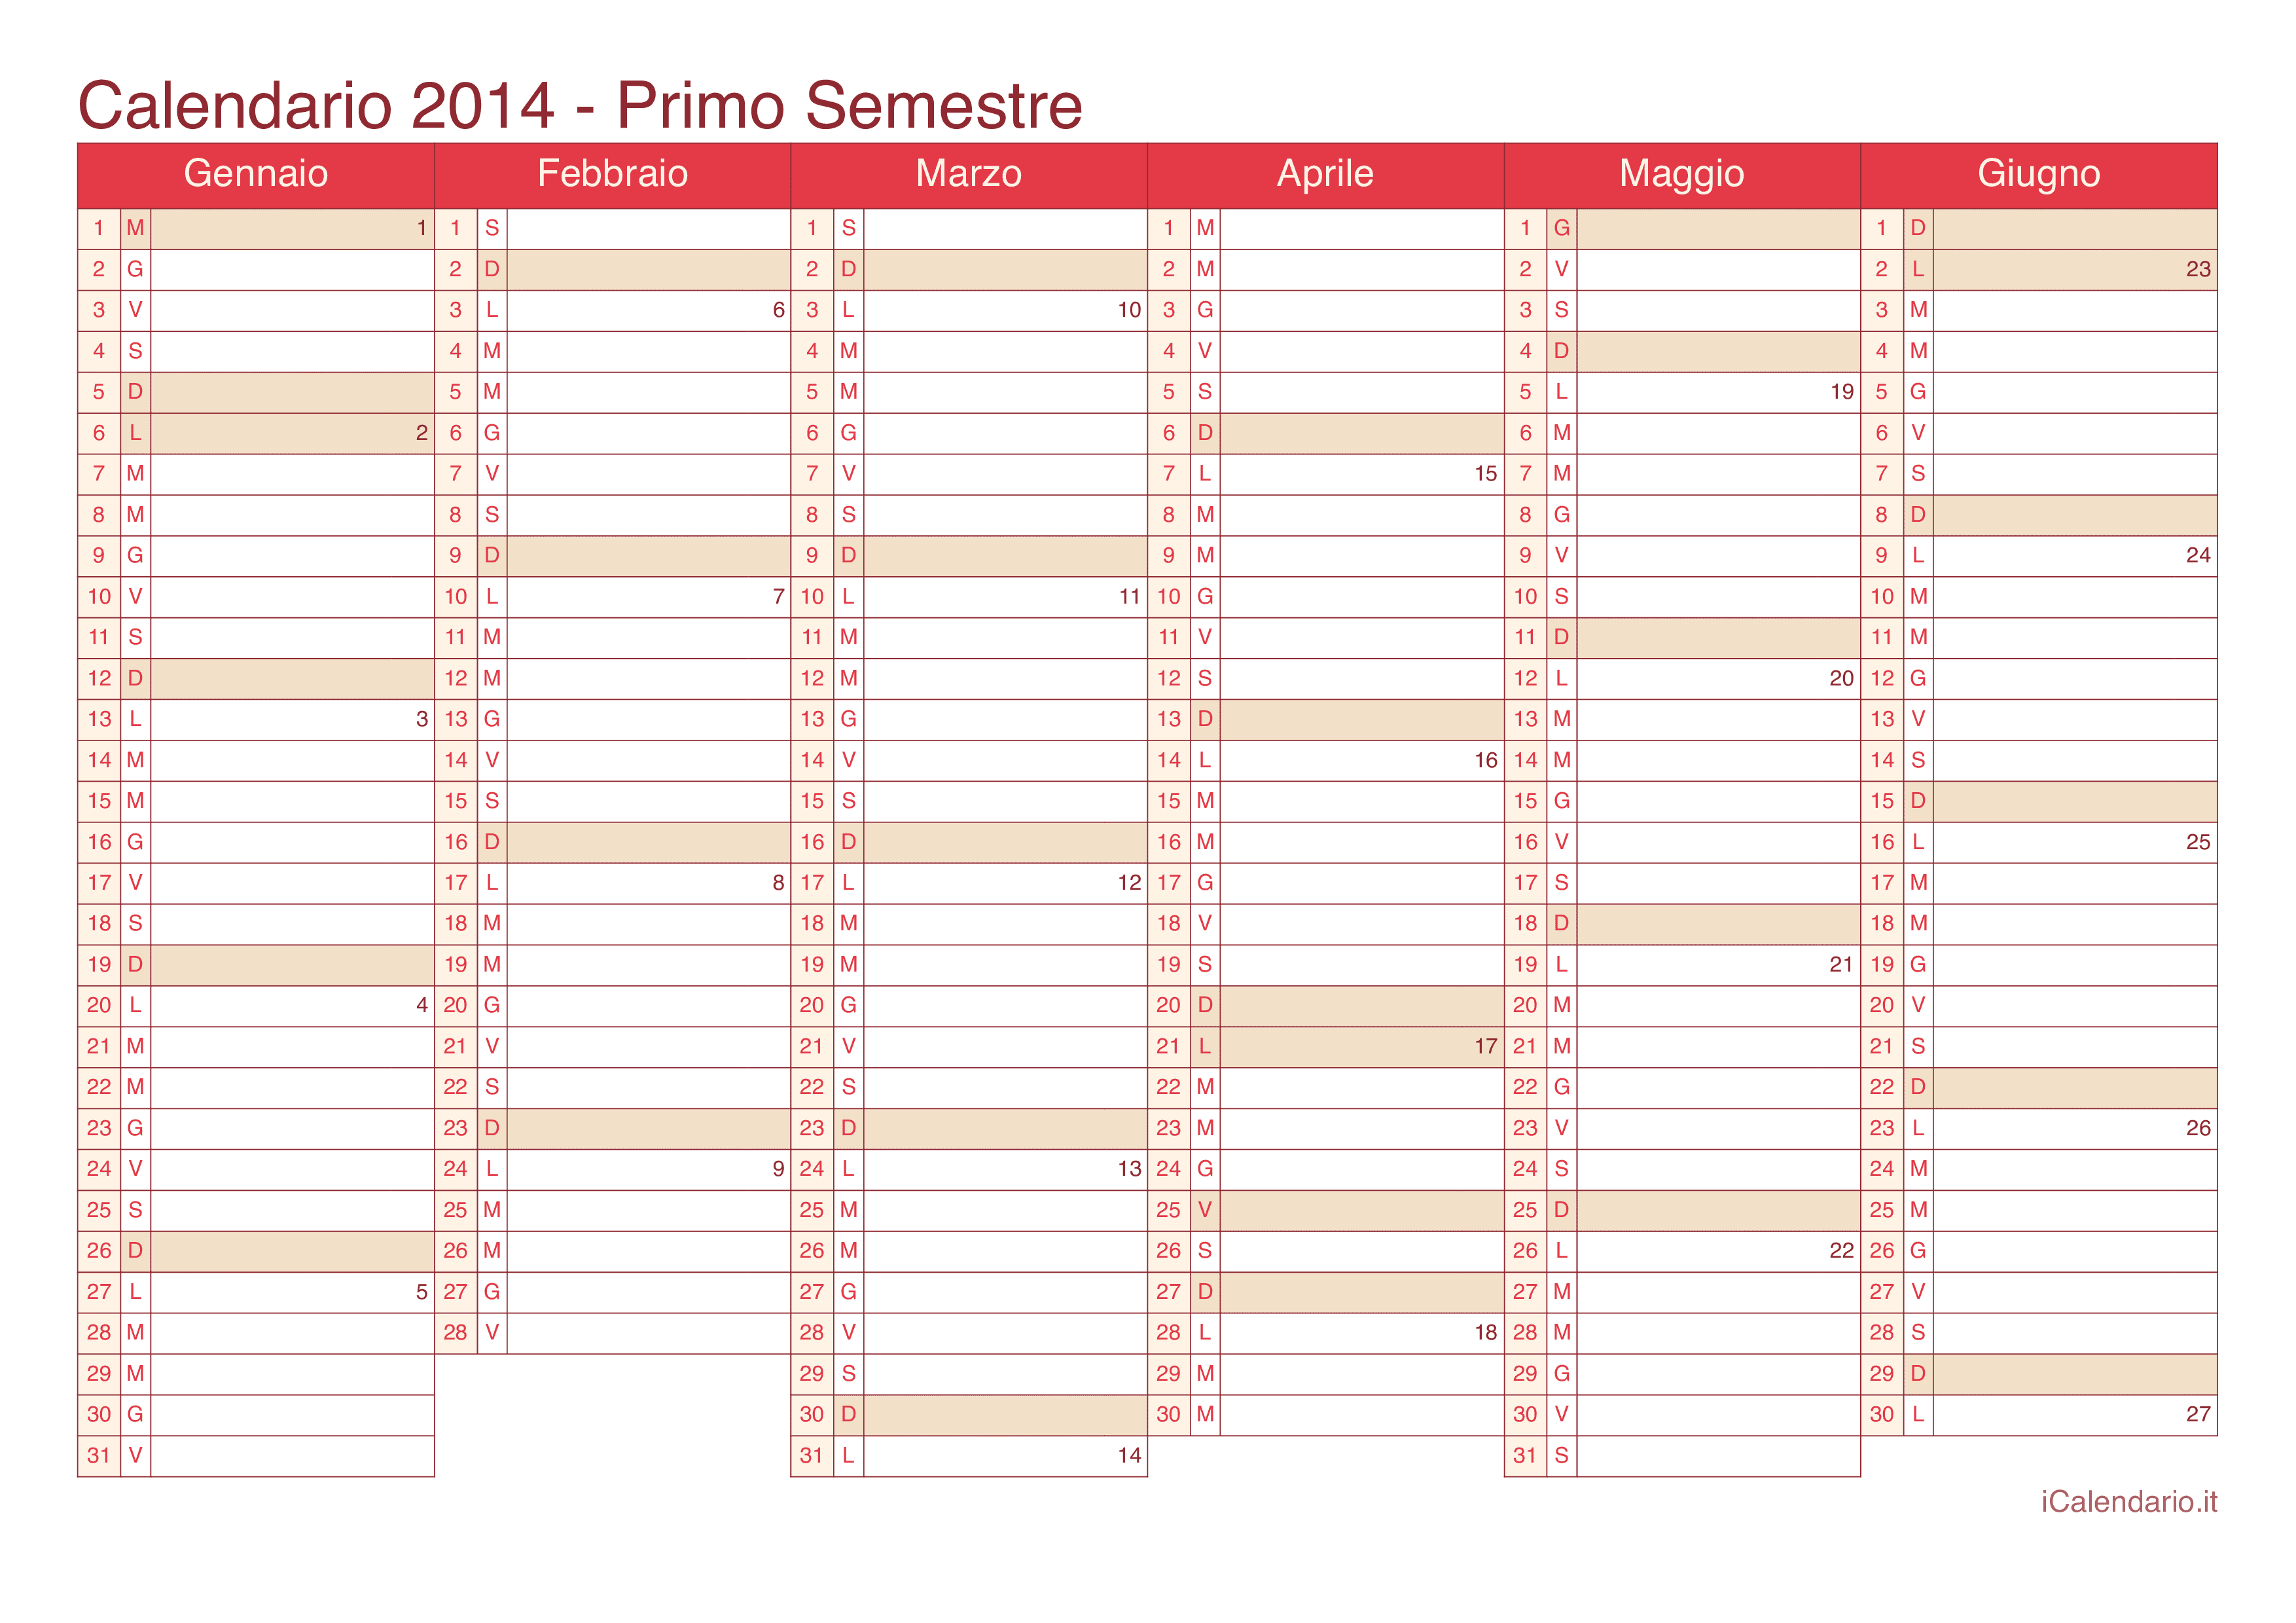 Calendario semestrale con numeri delle settimane 2014 - Cherry